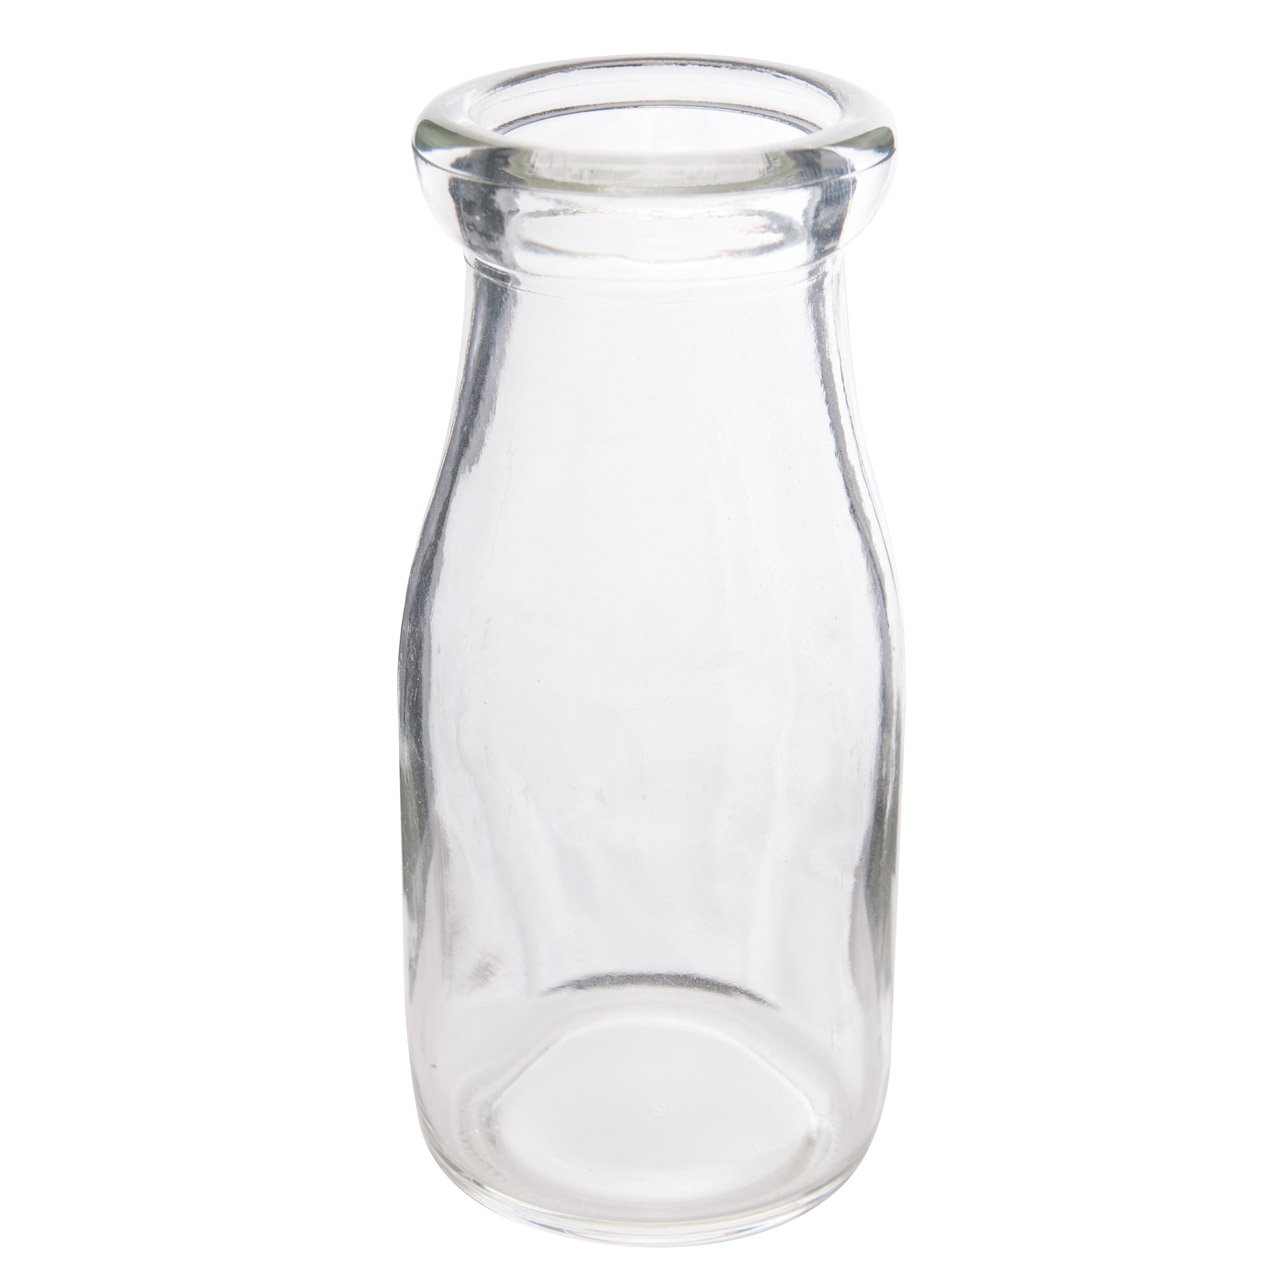 Stock Bottle: Half pint glass (48)